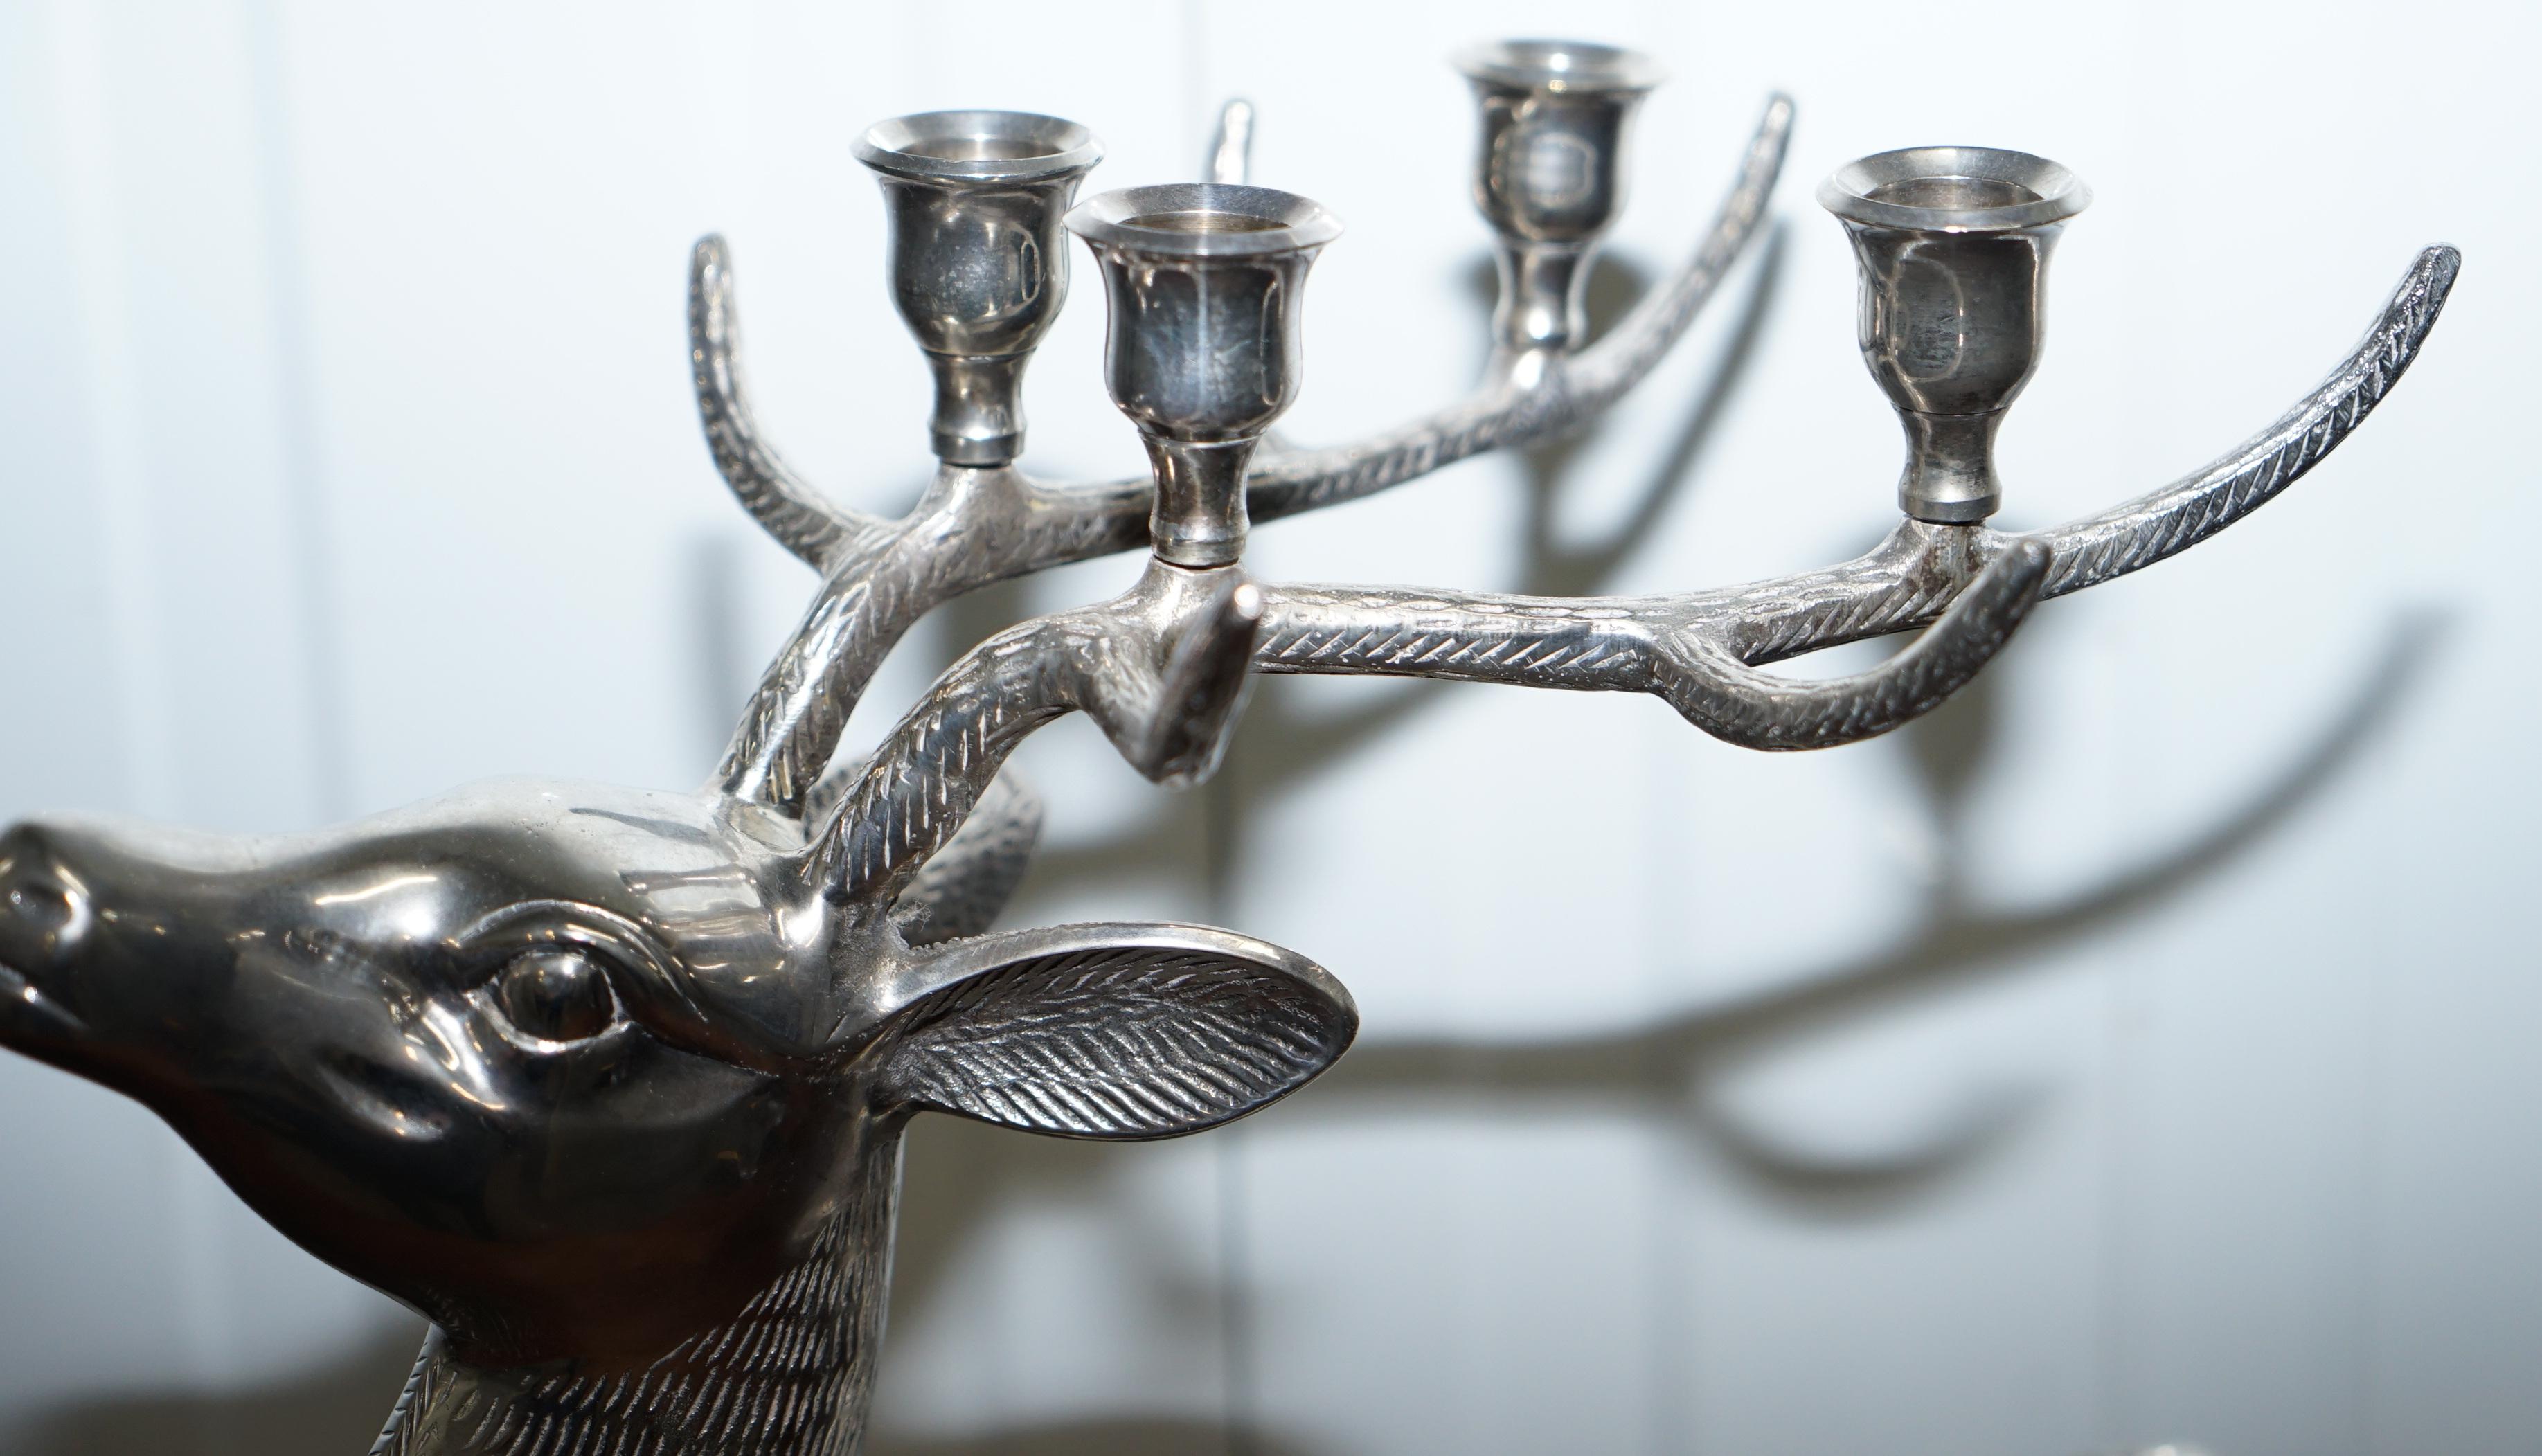 British Rare Ornately Cast Large Silver Plated Candle Stick Holder Reindeer Candelabra